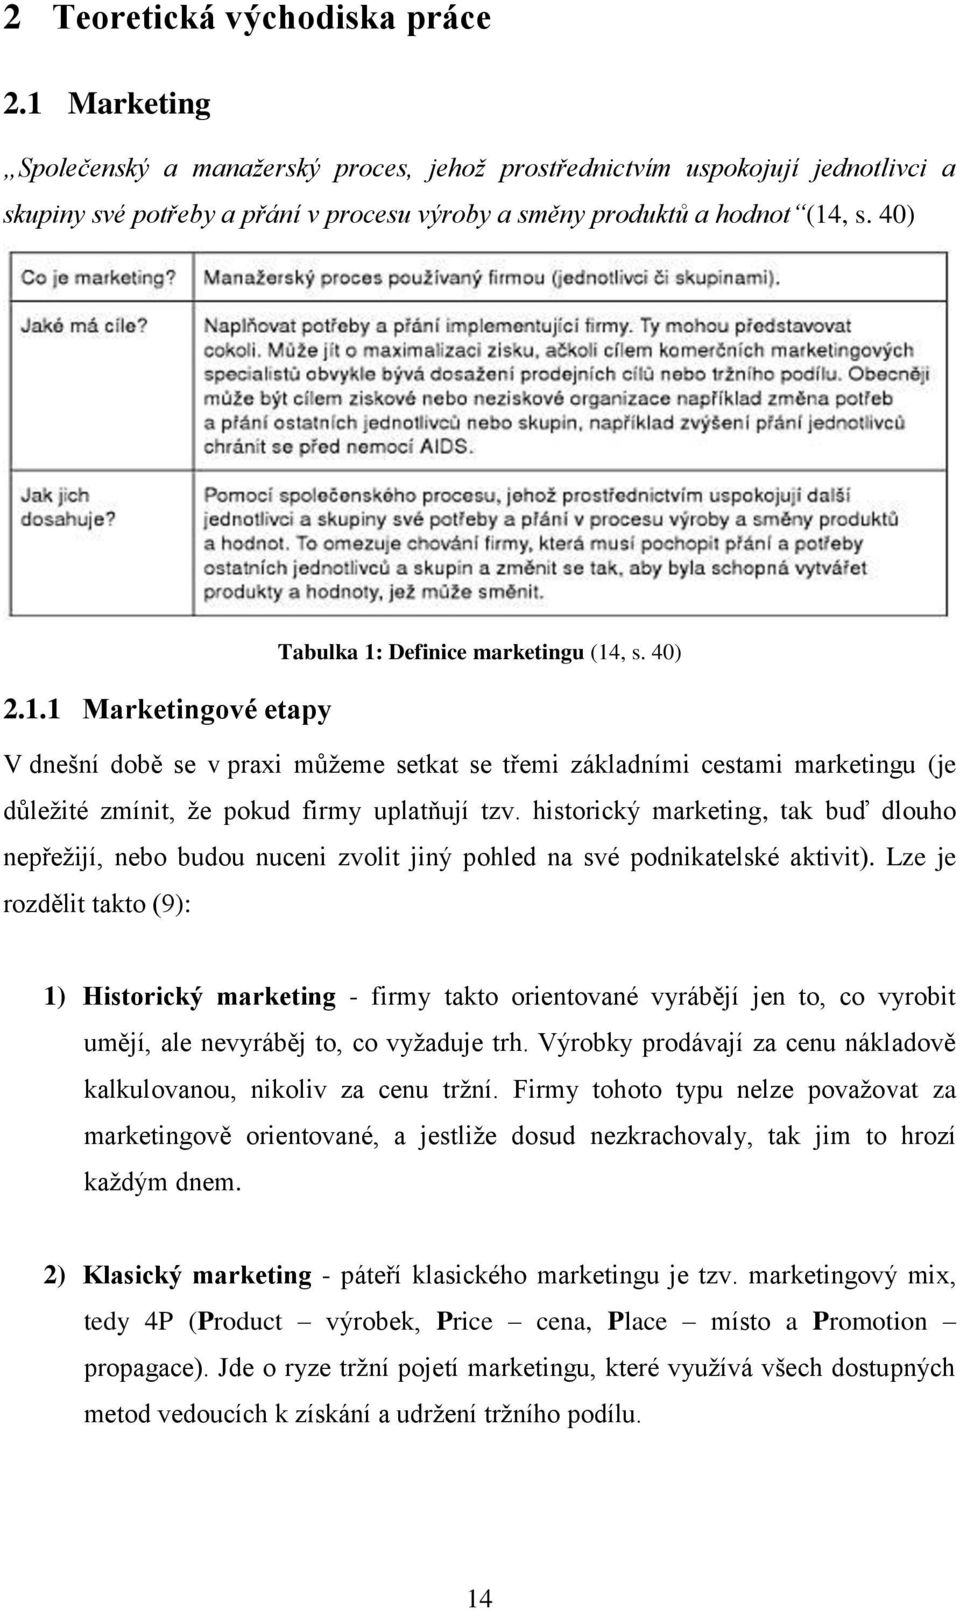 40) Tabulka 1: Definice marketingu (14, s. 40) 2.1.1 Marketingové etapy V dnešní době se v praxi můžeme setkat se třemi základními cestami marketingu (je důležité zmínit, že pokud firmy uplatňují tzv.